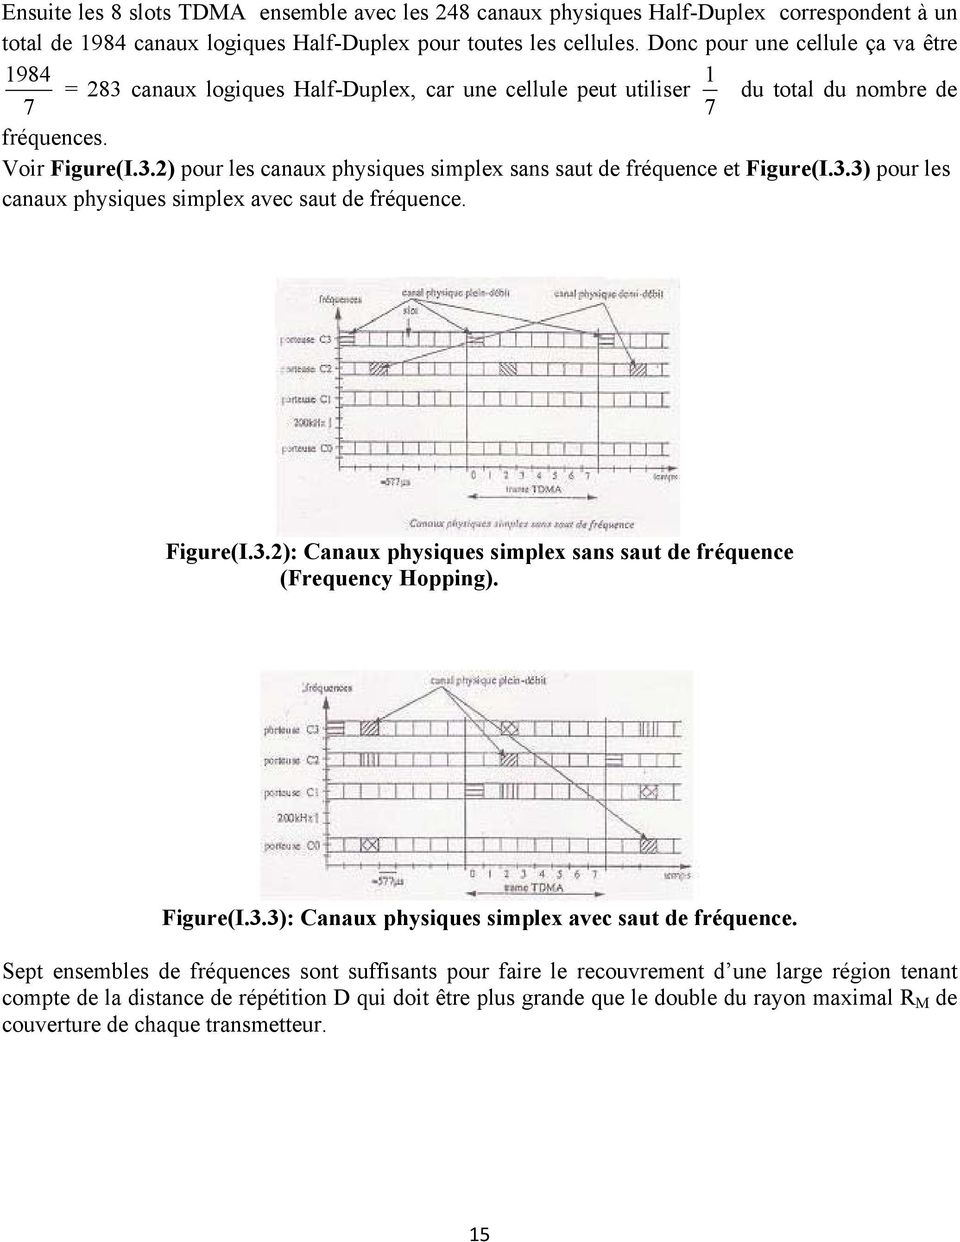 3.3) pour les canaux physiques simplex avec saut de fréquence. Figure(I.3.2): Canaux physiques simplex sans saut de fréquence (Frequency Hopping). Figure(I.3.3): Canaux physiques simplex avec saut de fréquence.